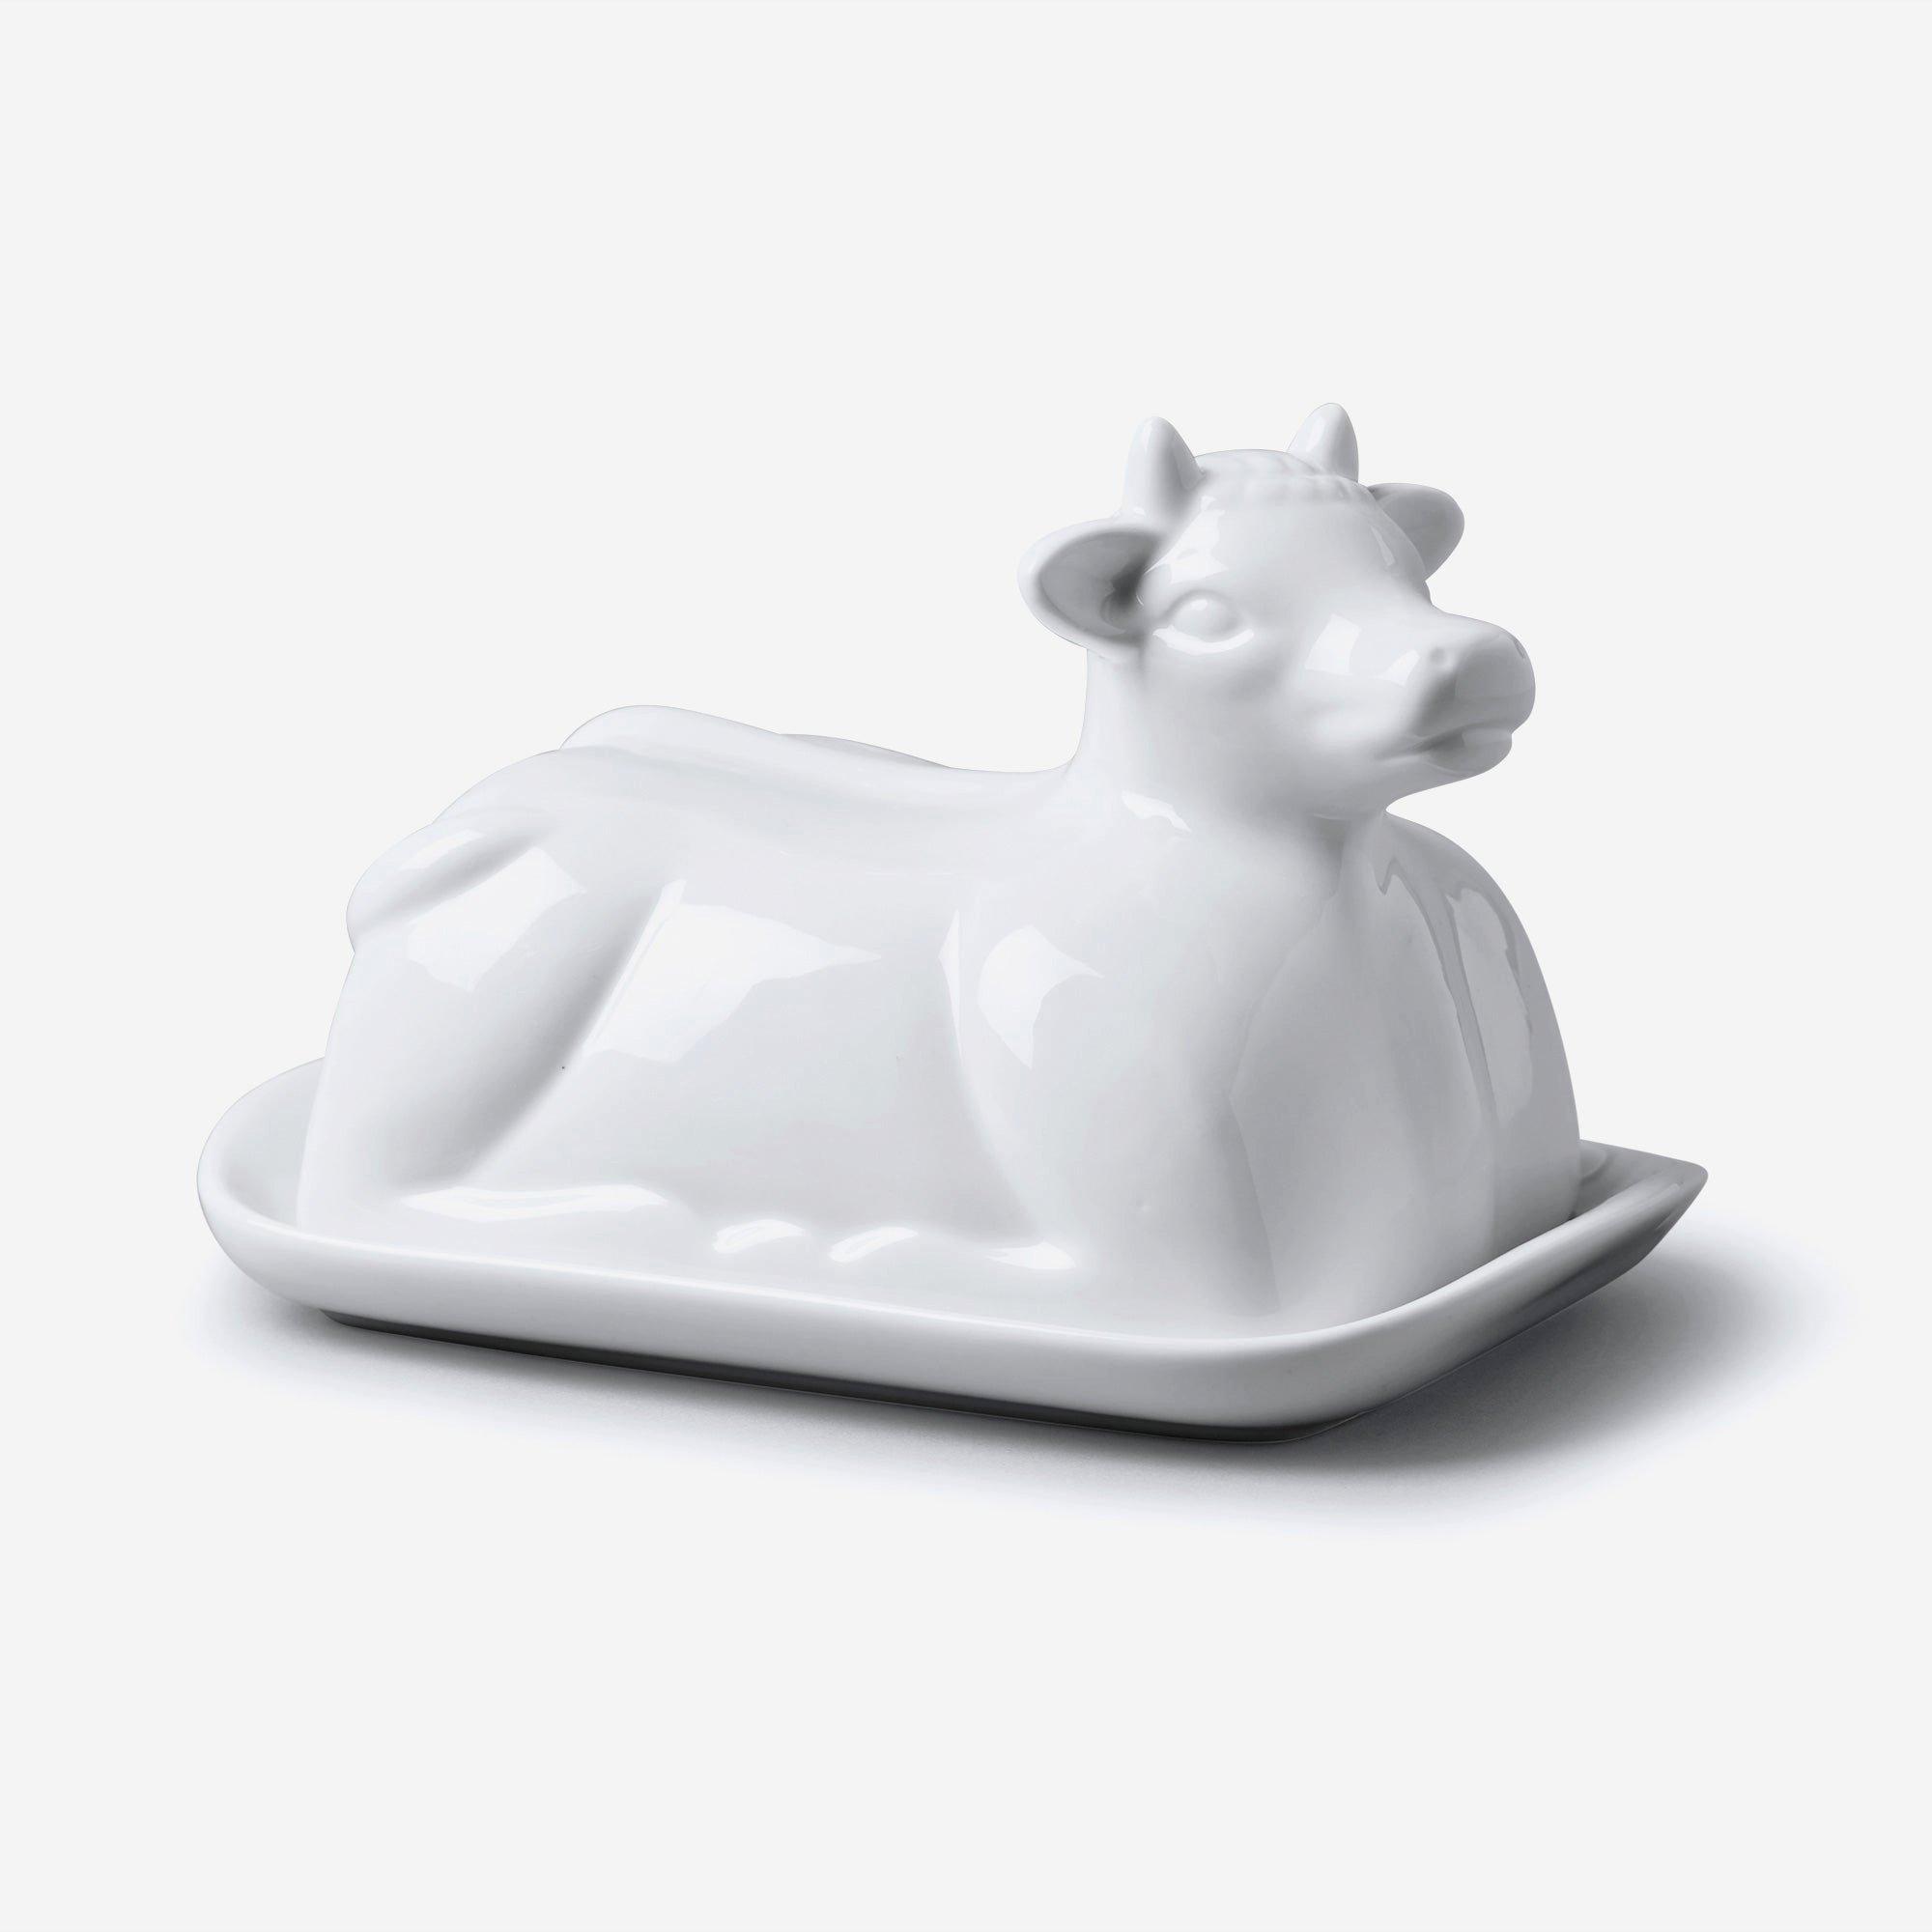 W M Bartleet - W M Bartleet Porcelain Cow Design Butter Dish - White